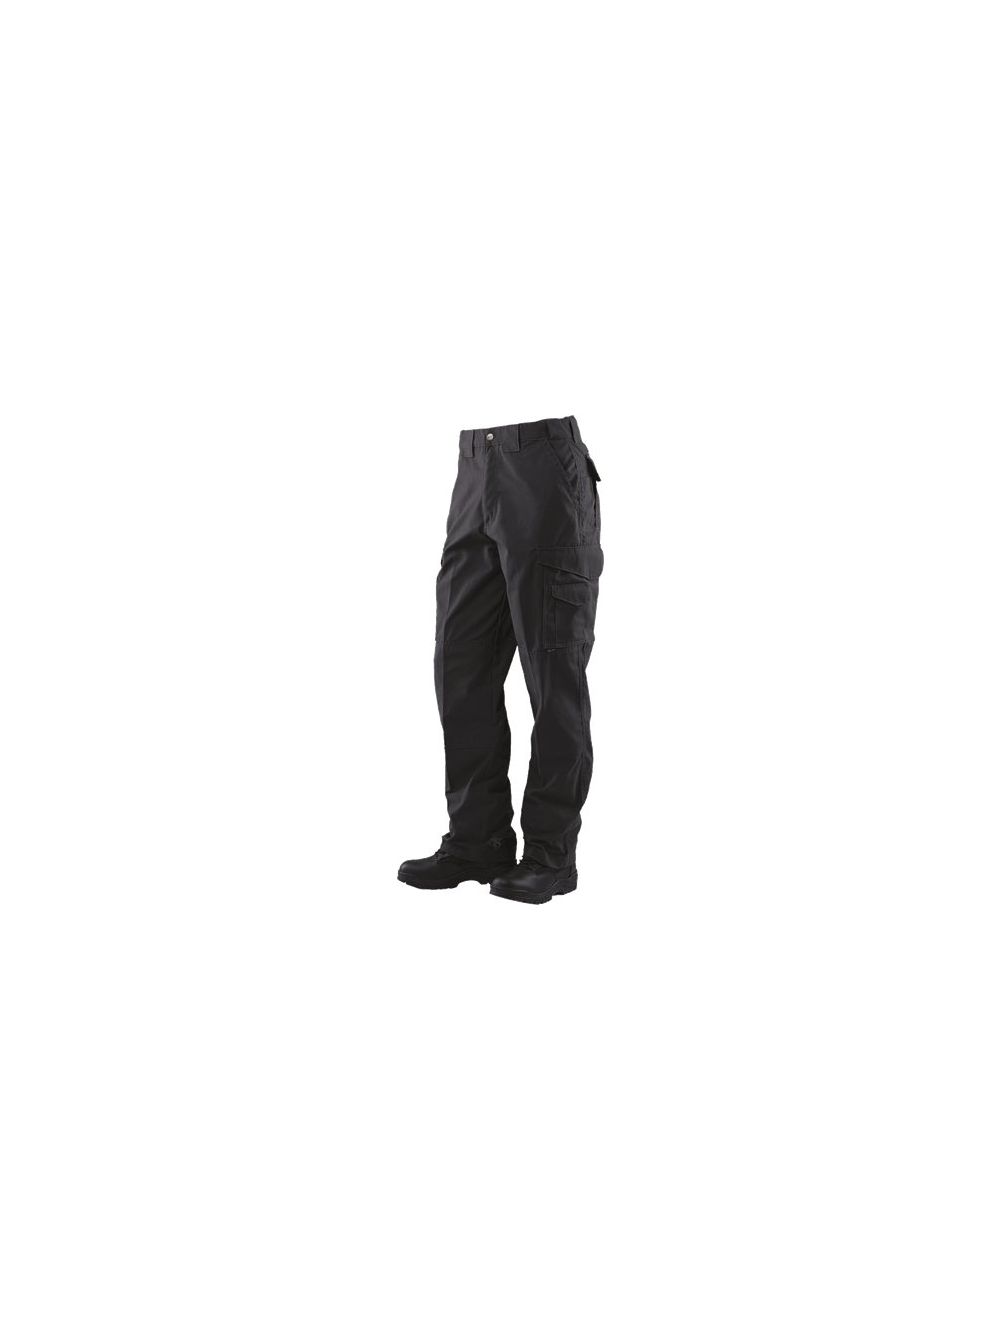 24-7 Original Tactical Pants - 6.5oz - Black